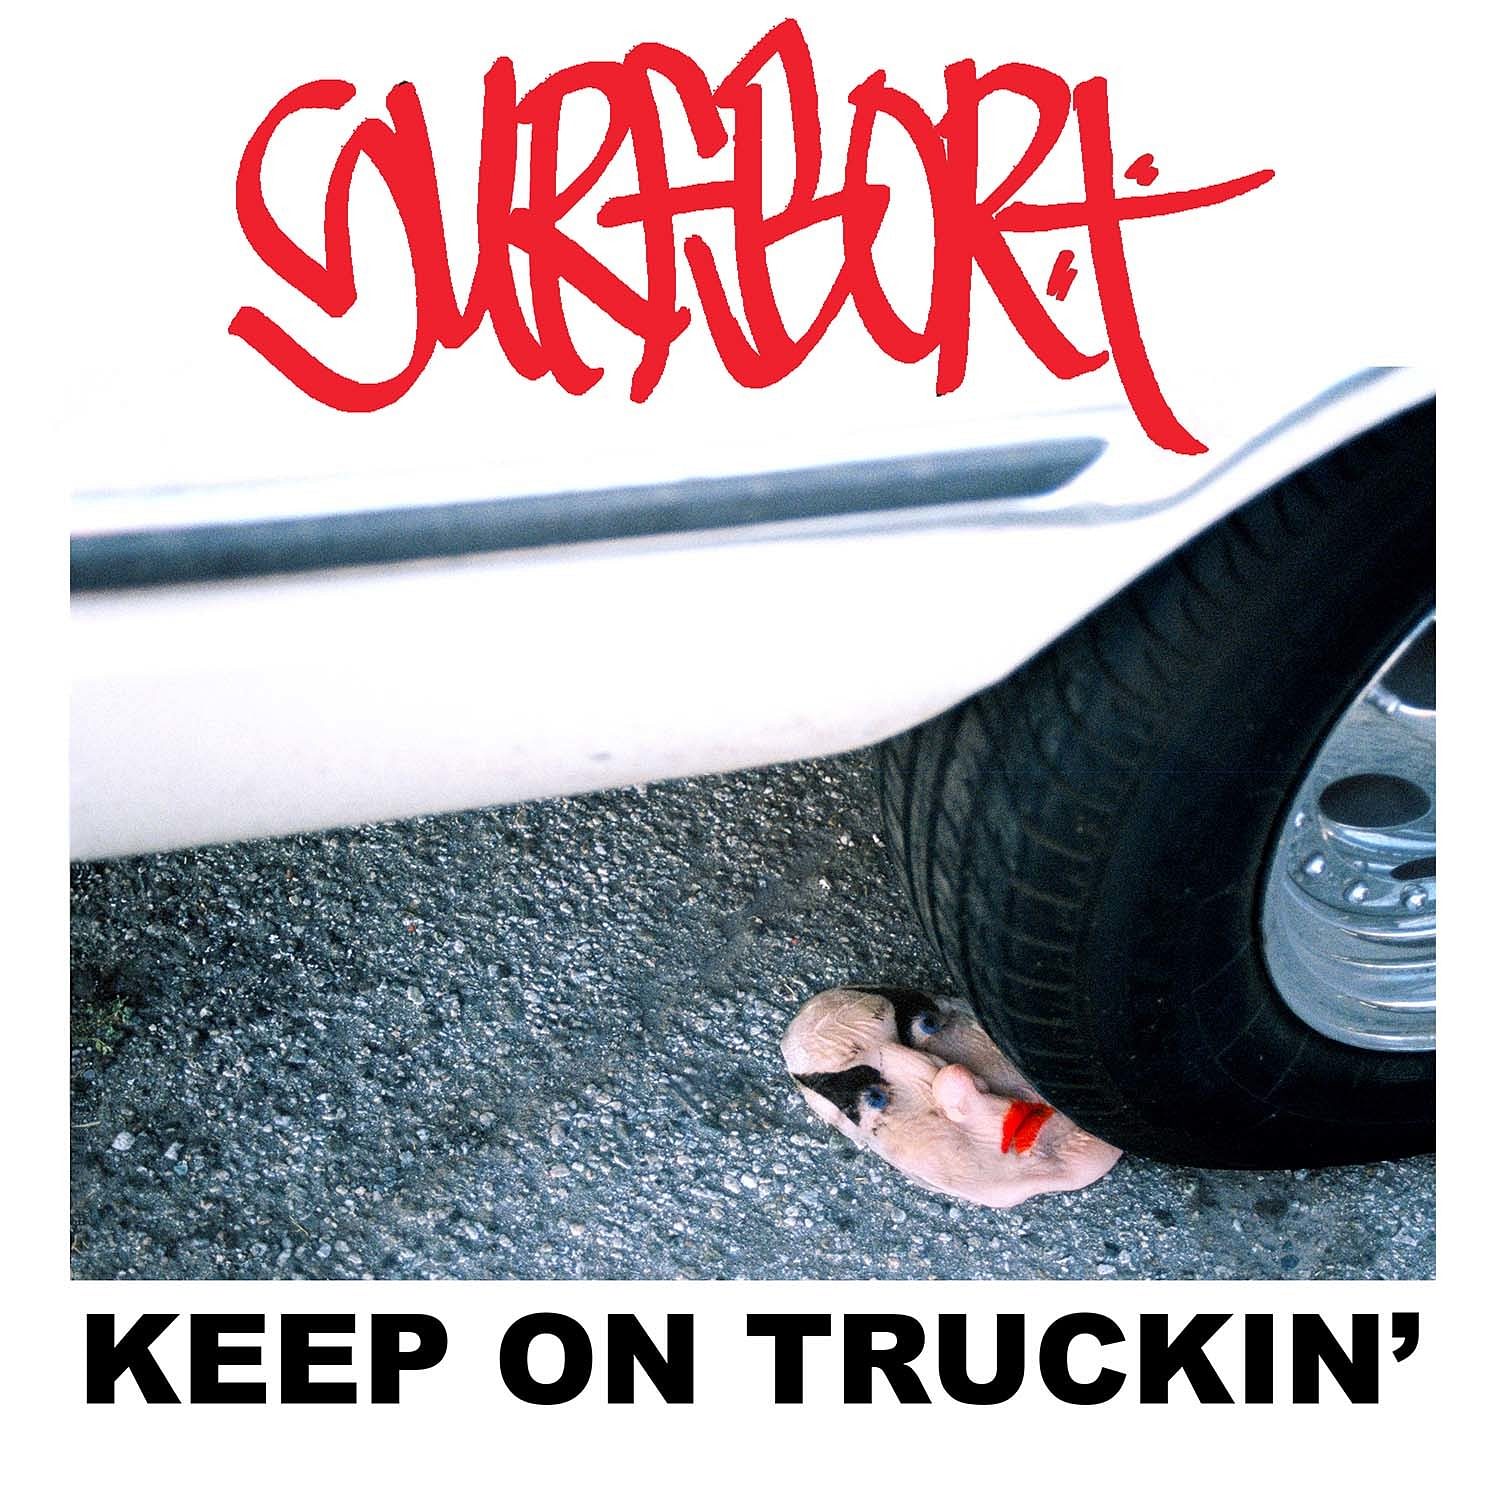 Surfbort - Keep On Truckin’